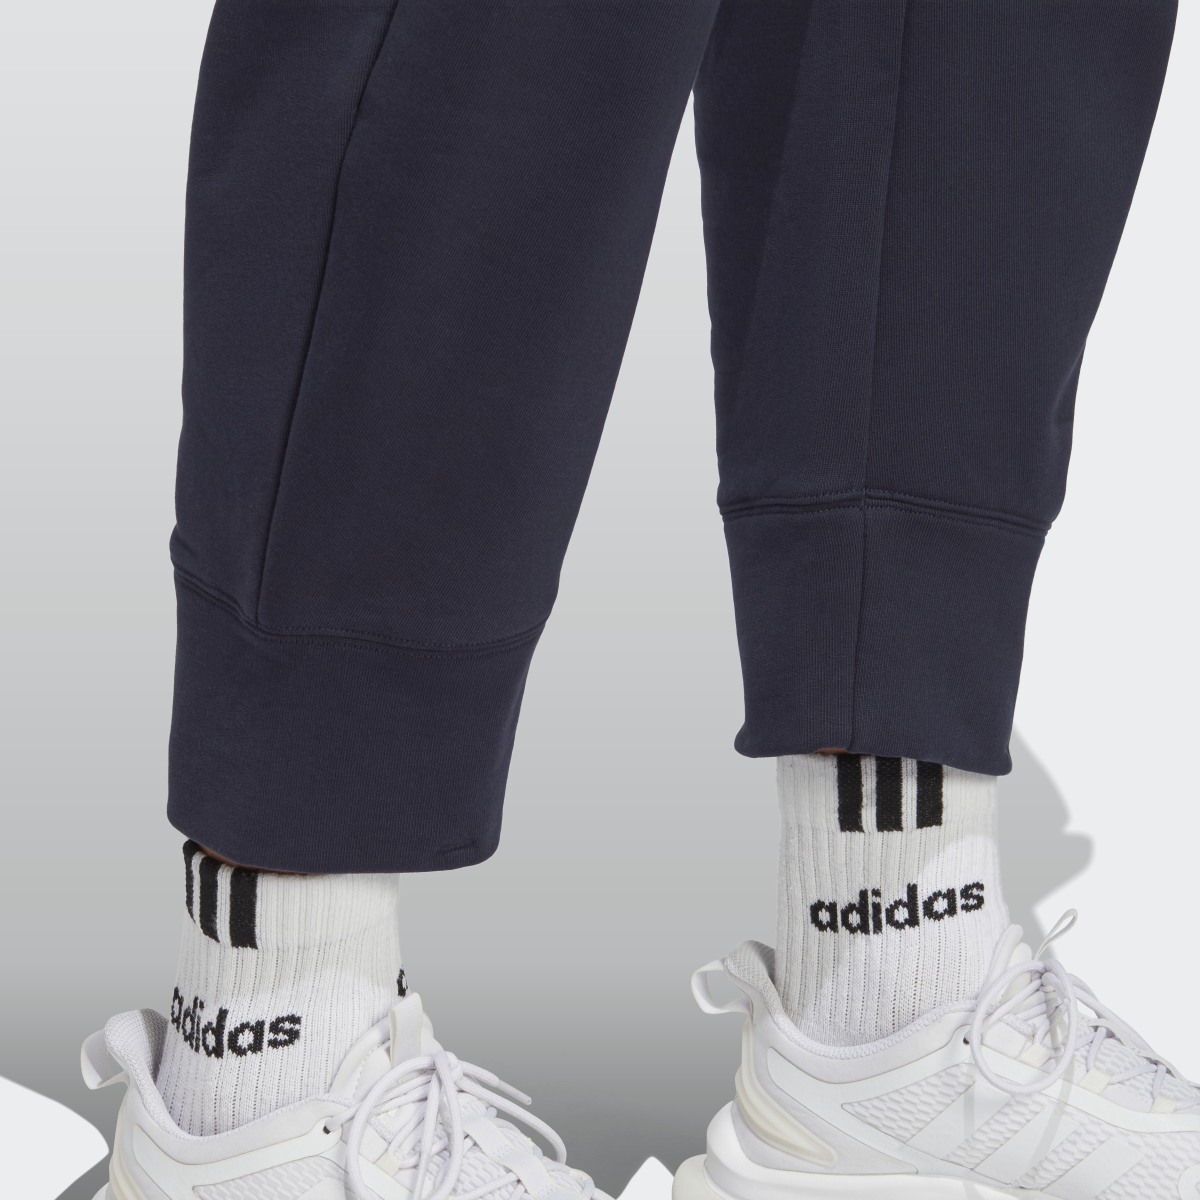 Adidas x Parley 7/8 Pants (Gender Neutral). 6